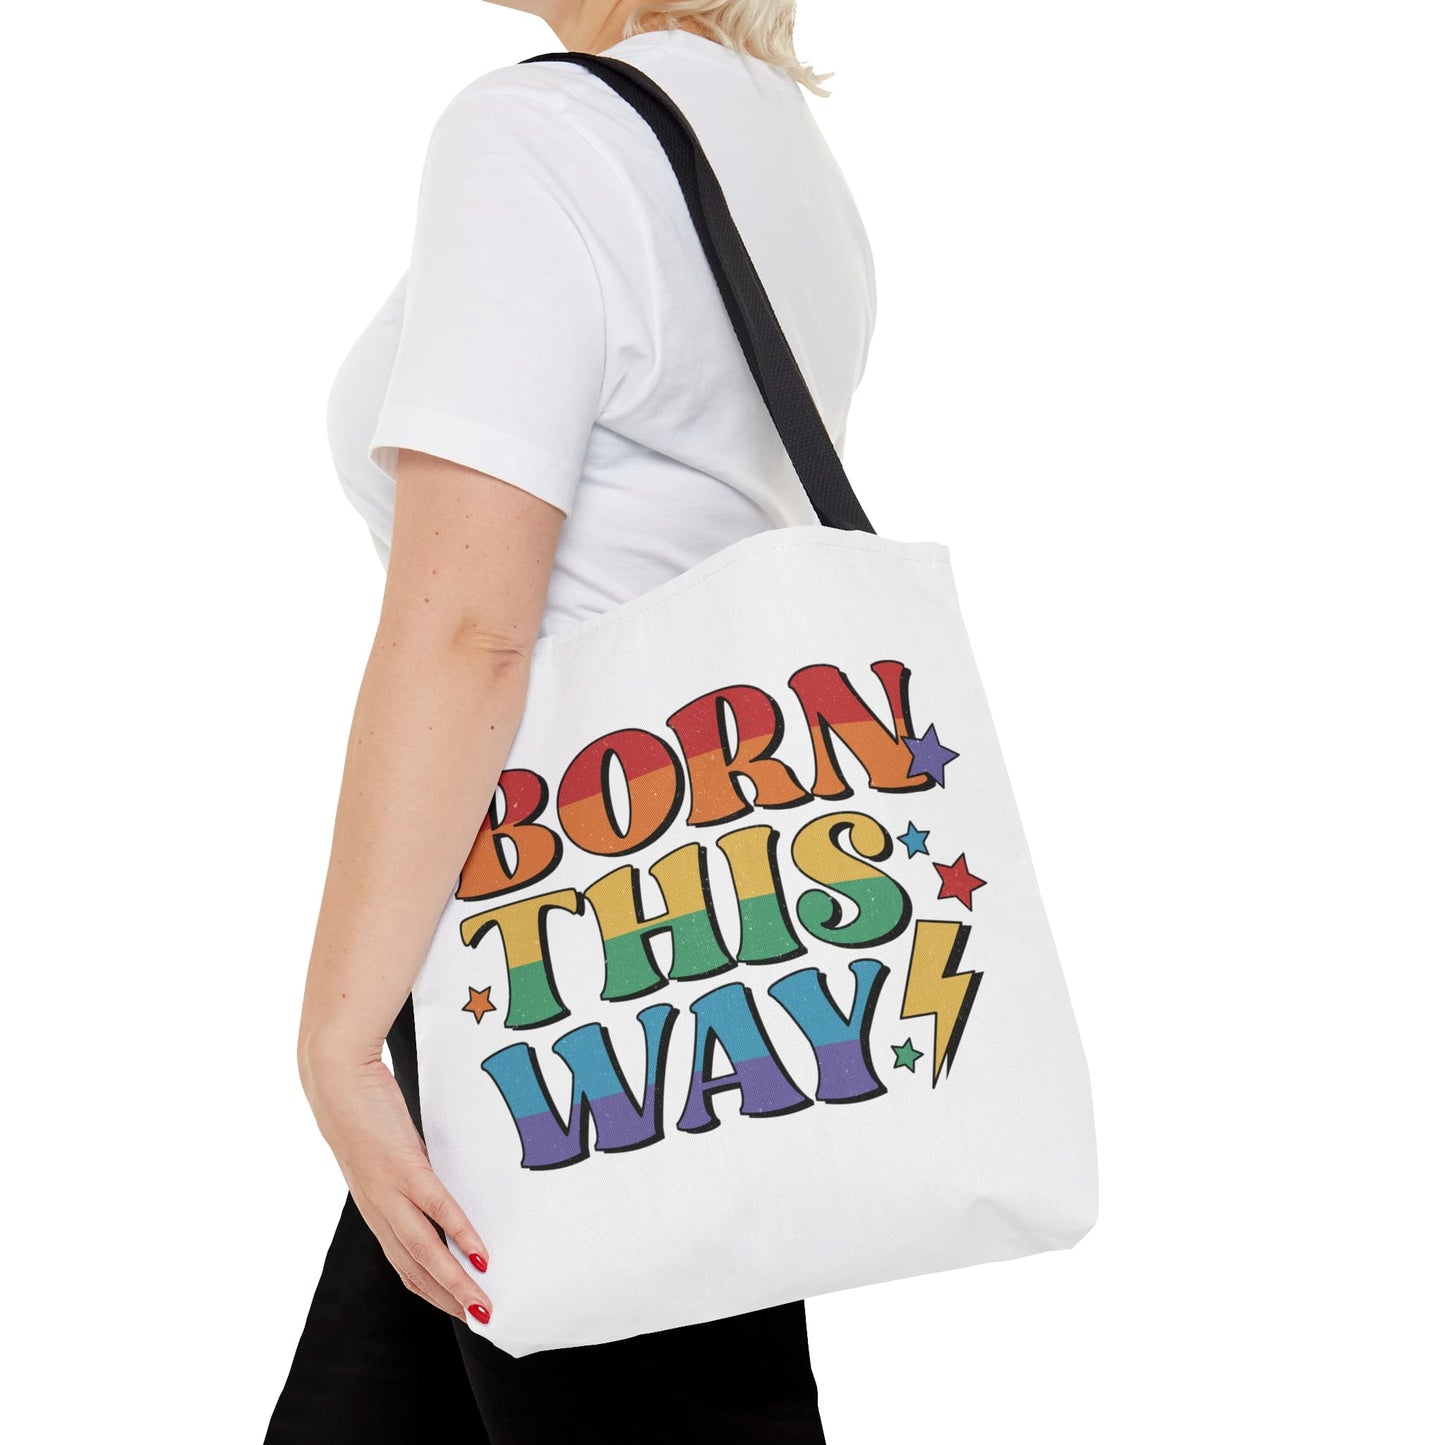 LGBTQ pride tote bag, born this way bag, medium